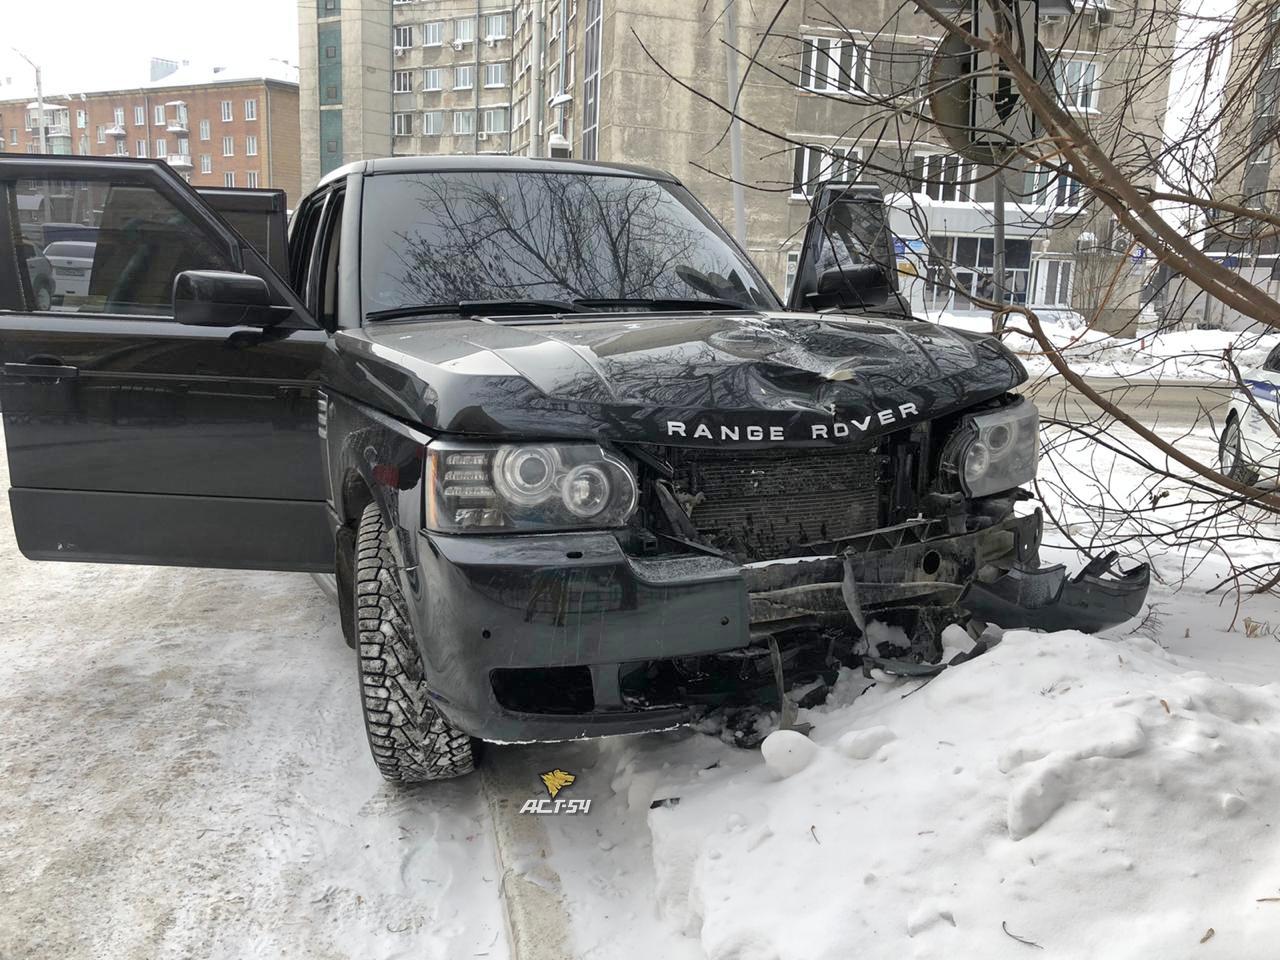 Фото «Сейчас угон заявит» и «Отмажут мажорика»: новосибирцы спорят о судьбе водителя Range Rover, сбившего насмерть женщину в Новосибирске 2